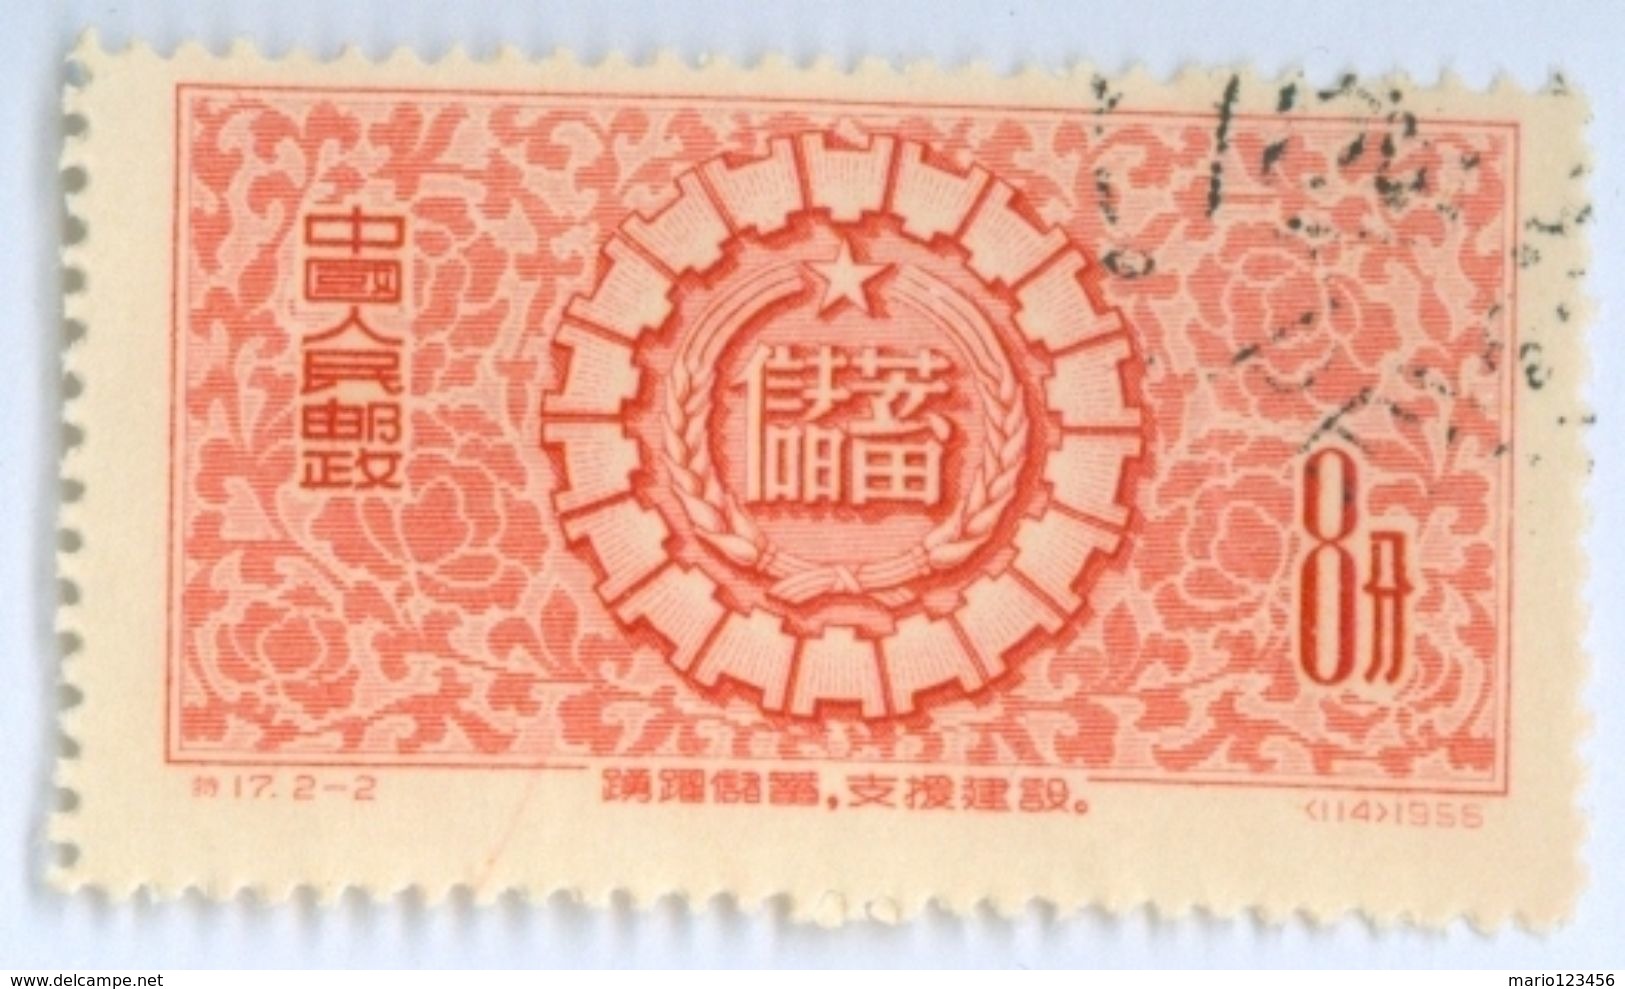 CINA, CHINA, RISPARMIO, 1956, FRANCOBOLLI USATI, Michel CN 324 - Unused Stamps